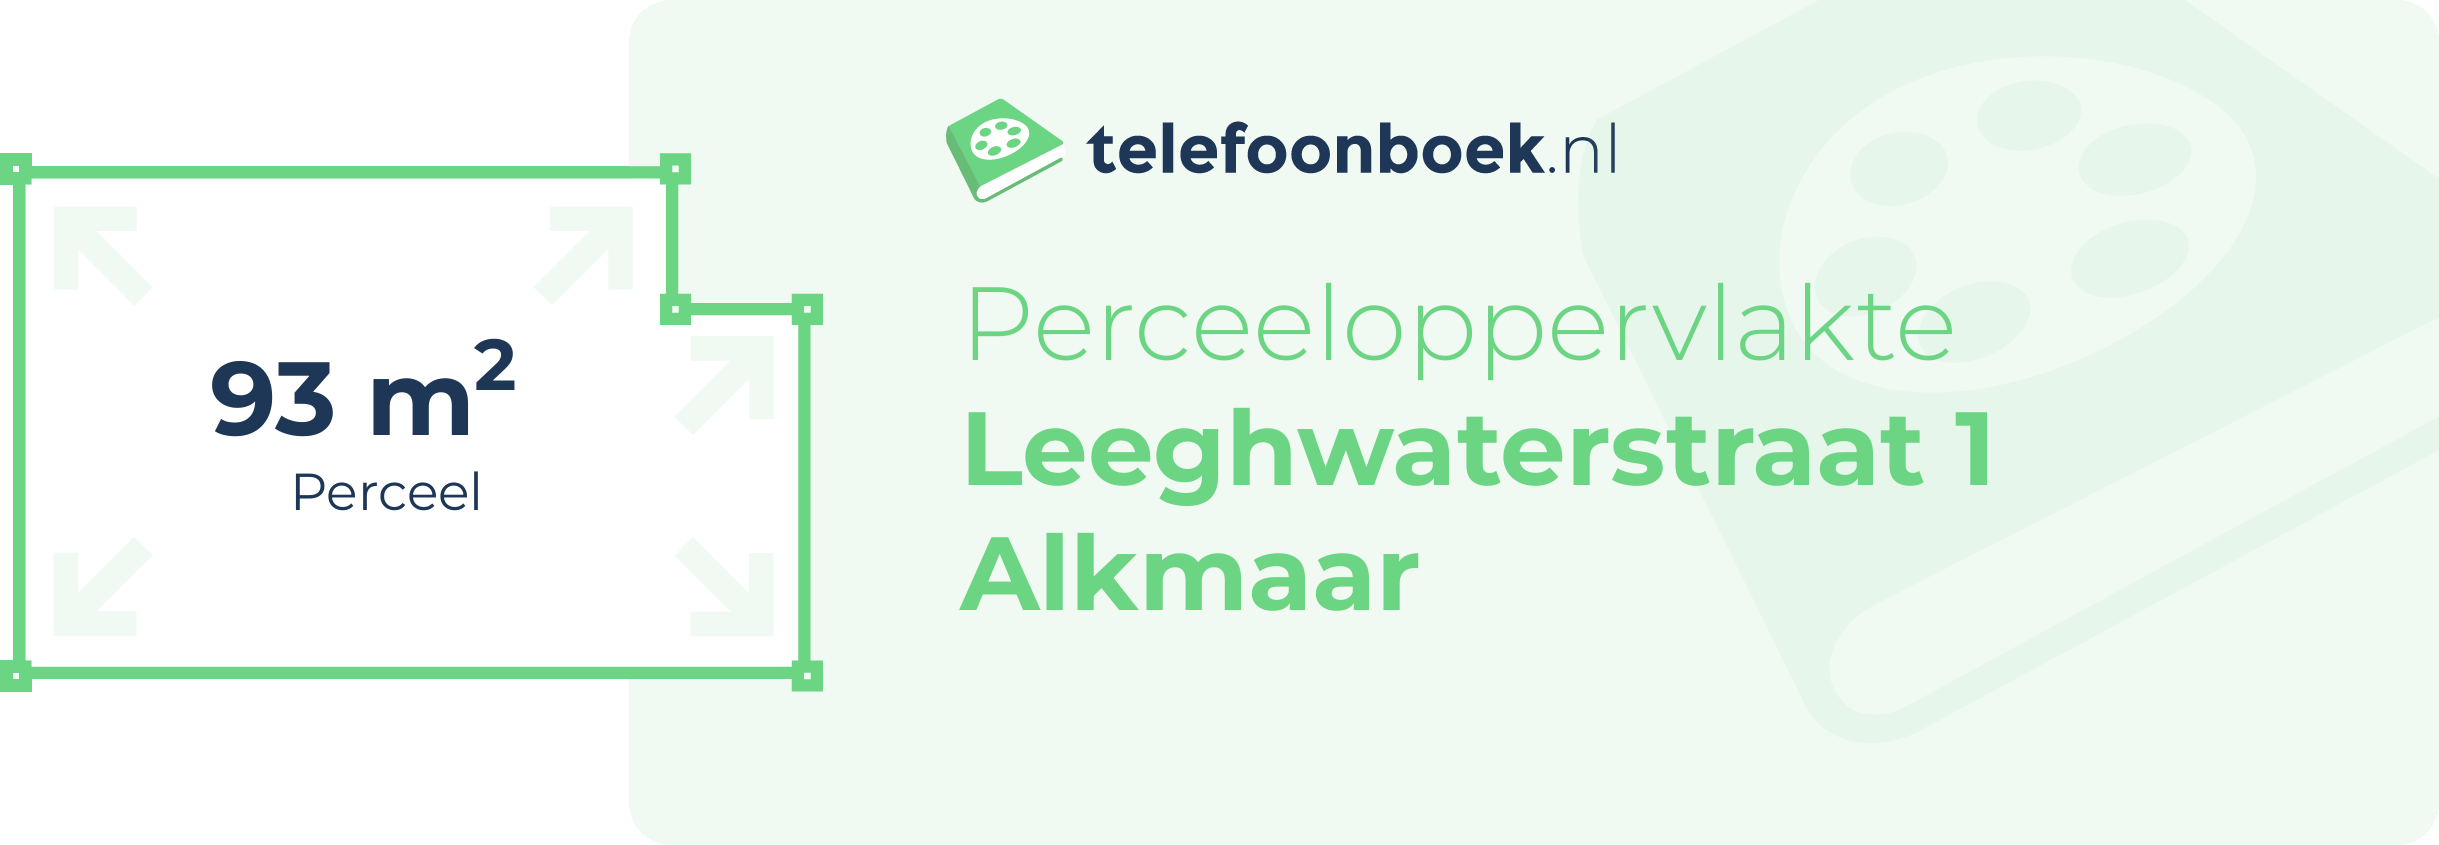 Perceeloppervlakte Leeghwaterstraat 1 Alkmaar